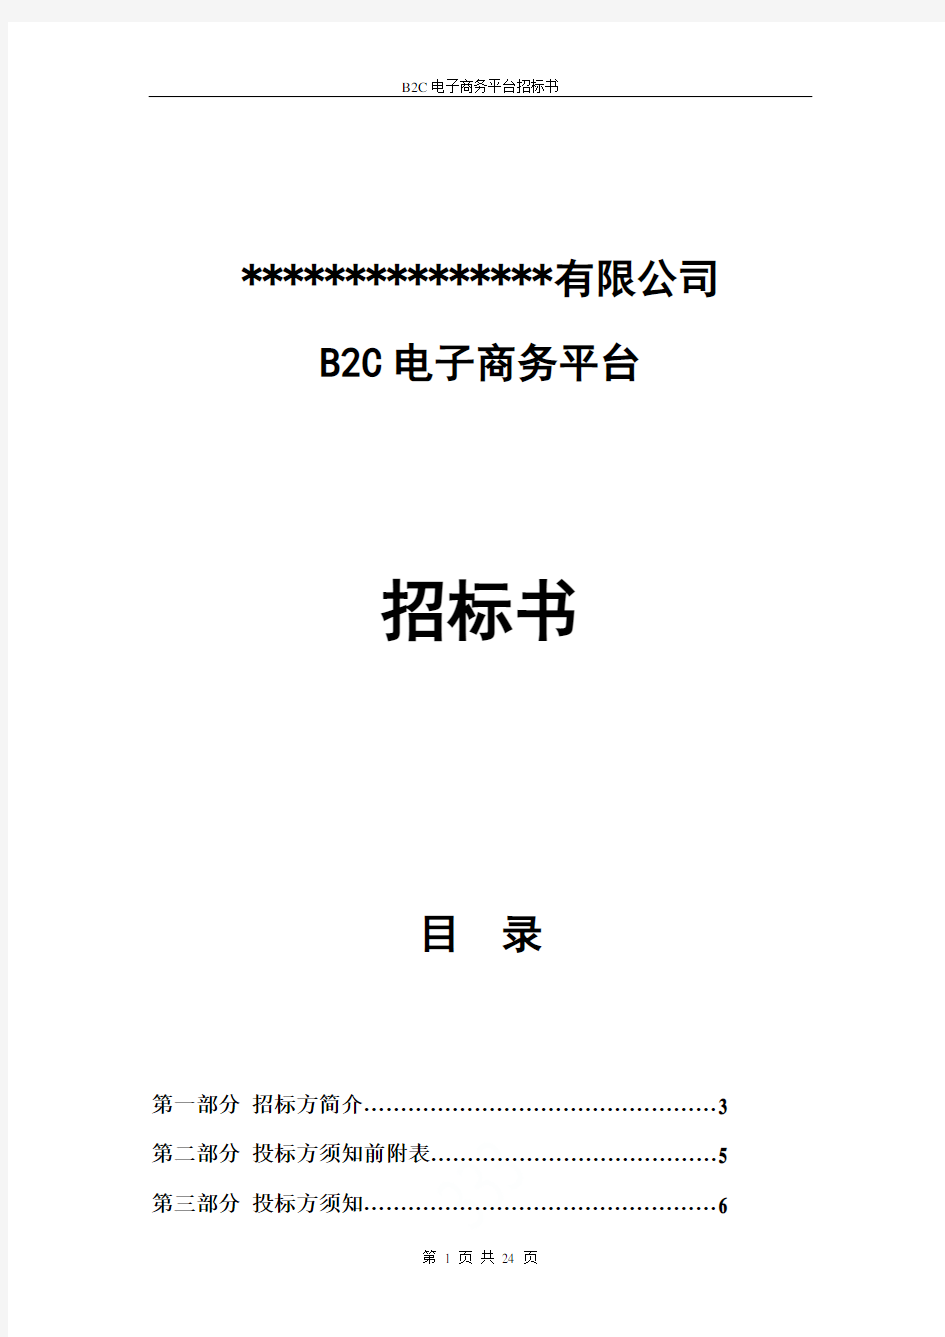 B2C电子商务平台招标书